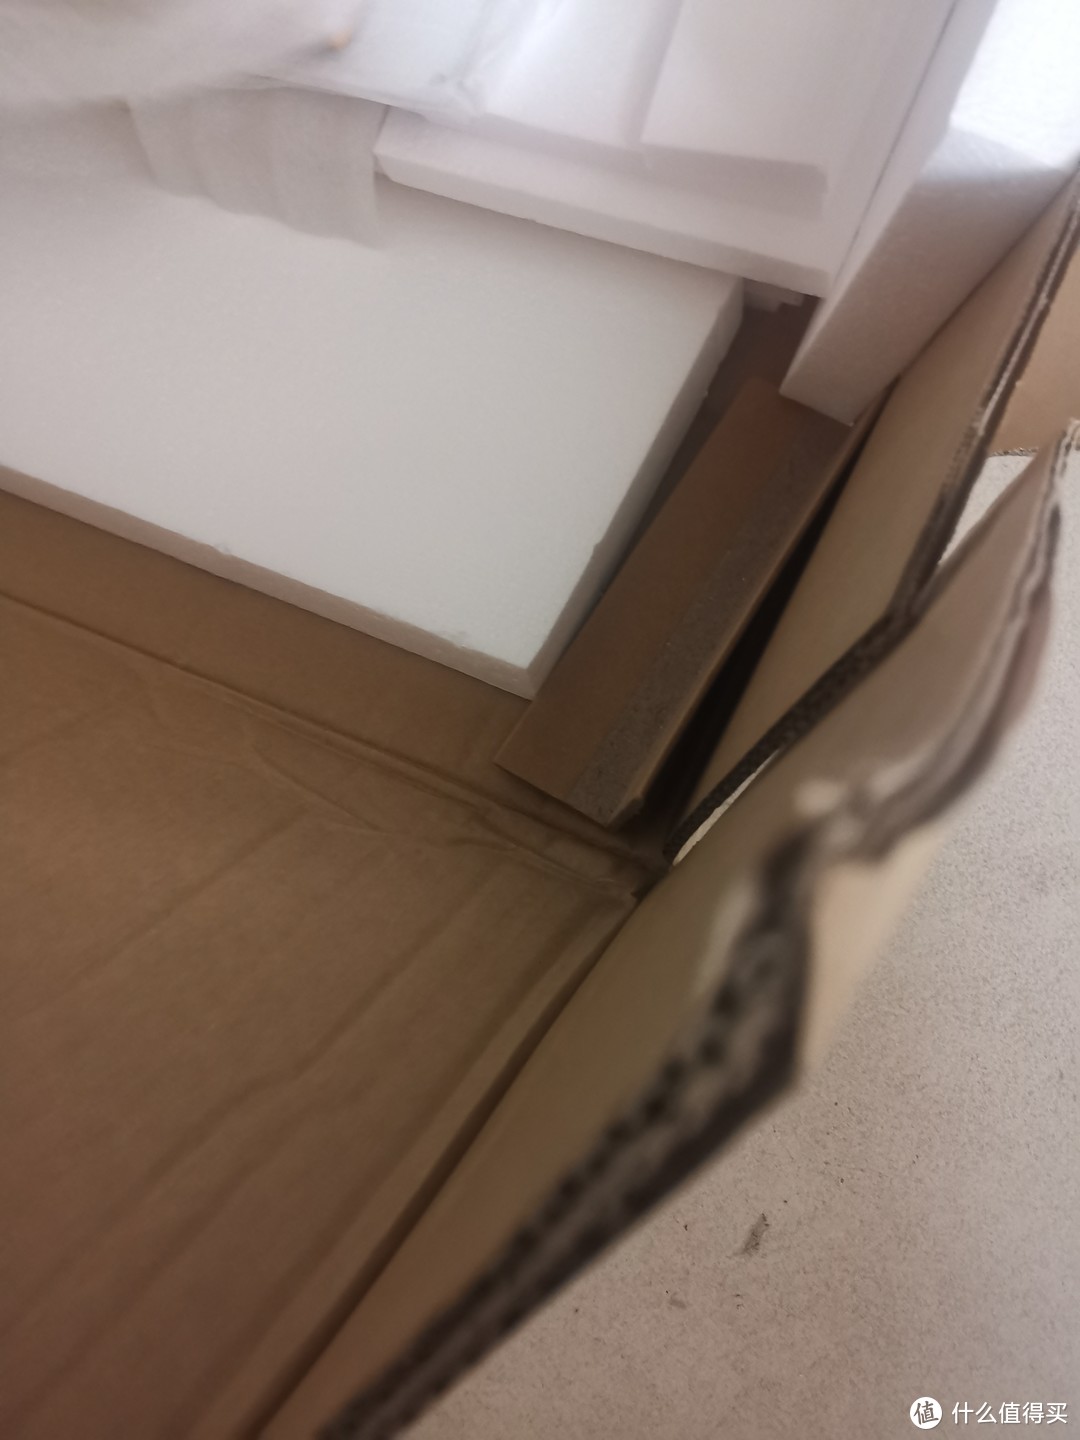 产品包装也做的很到位，虽然很重，但是纸箱依旧完整无损；也可以看到内置的还有高强度直角支撑